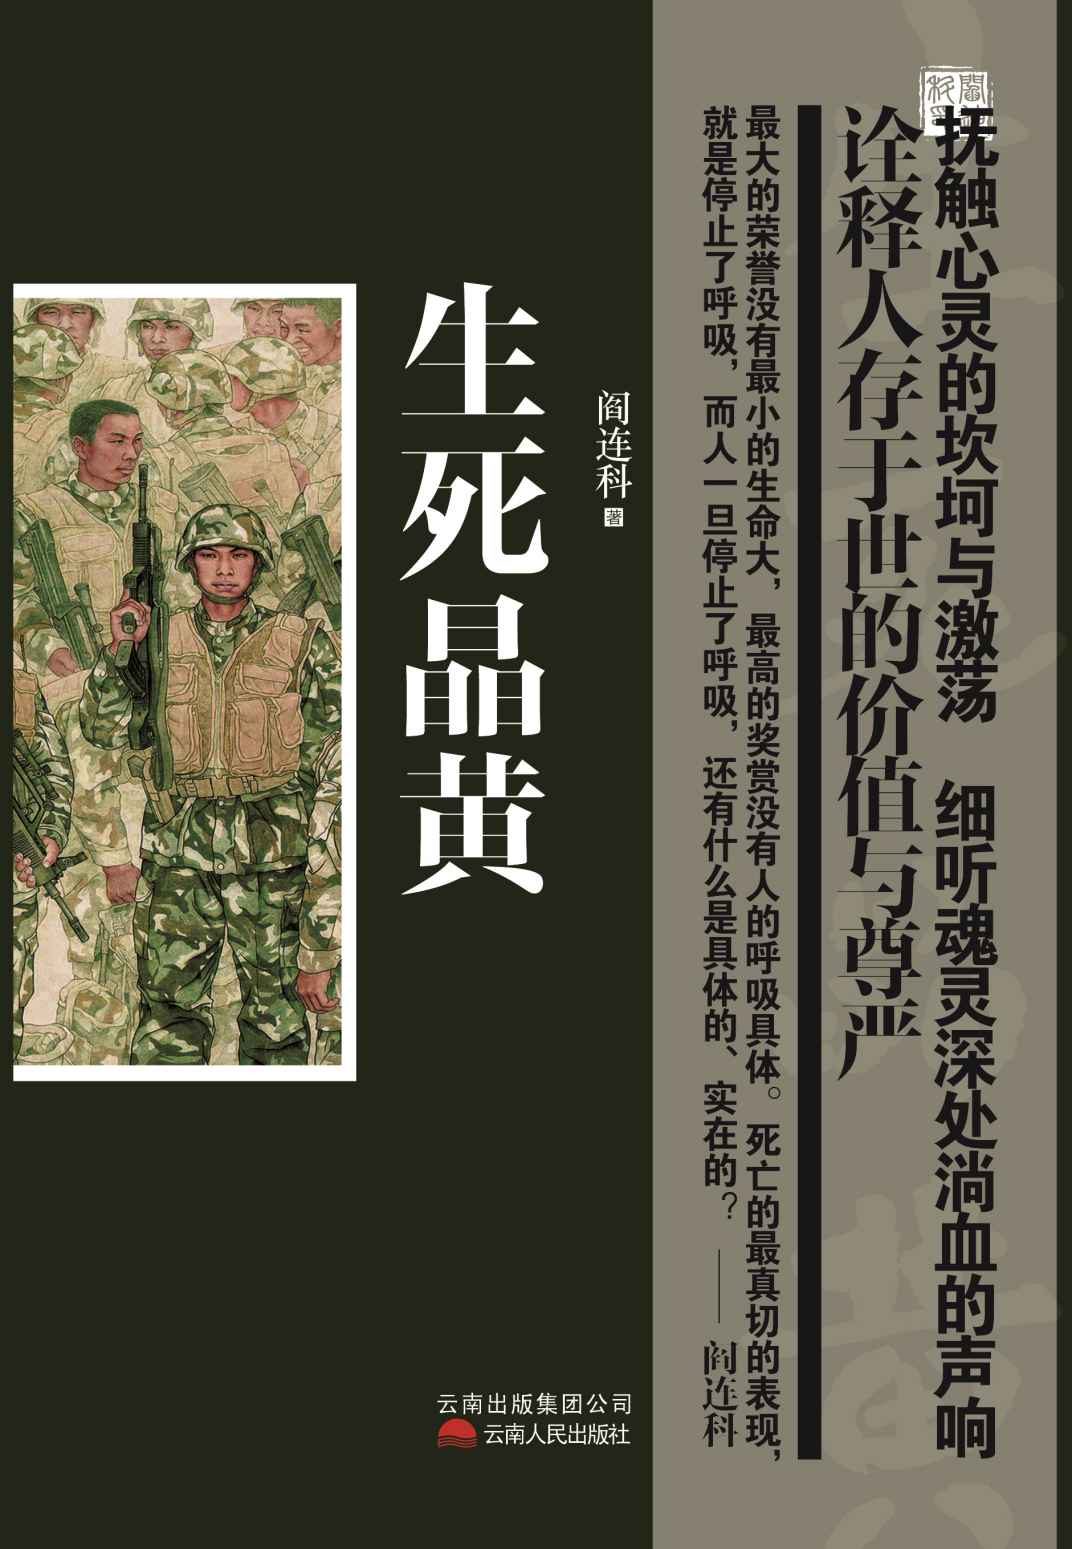 生死晶黄 (Paperback, Chinese language, 2013, 云南人民出版社)